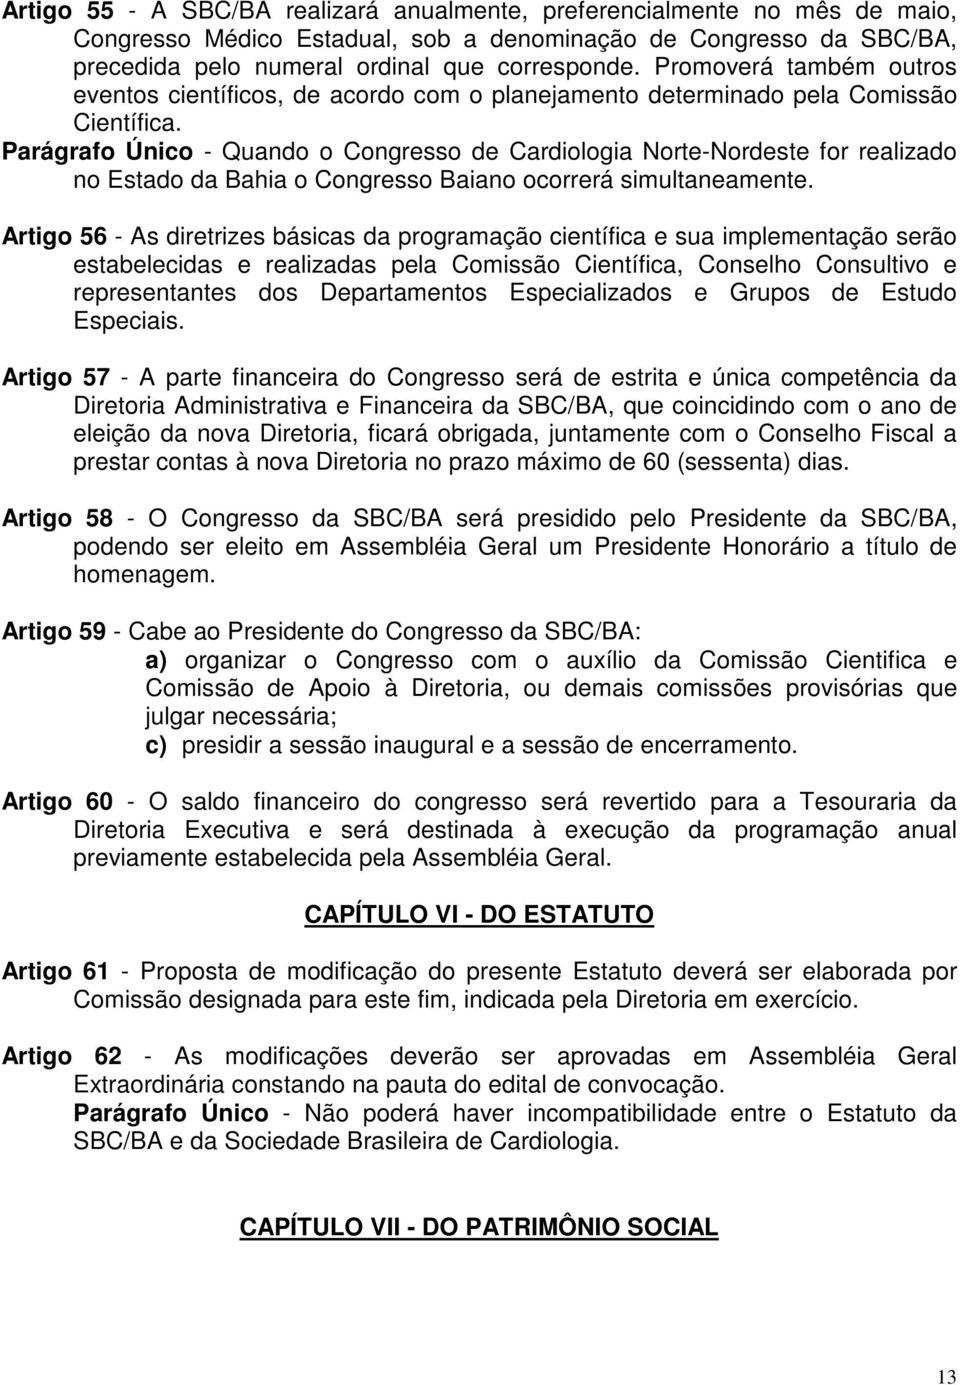 Parágrafo Único - Quando o Congresso de Cardiologia Norte-Nordeste for realizado no Estado da Bahia o Congresso Baiano ocorrerá simultaneamente.